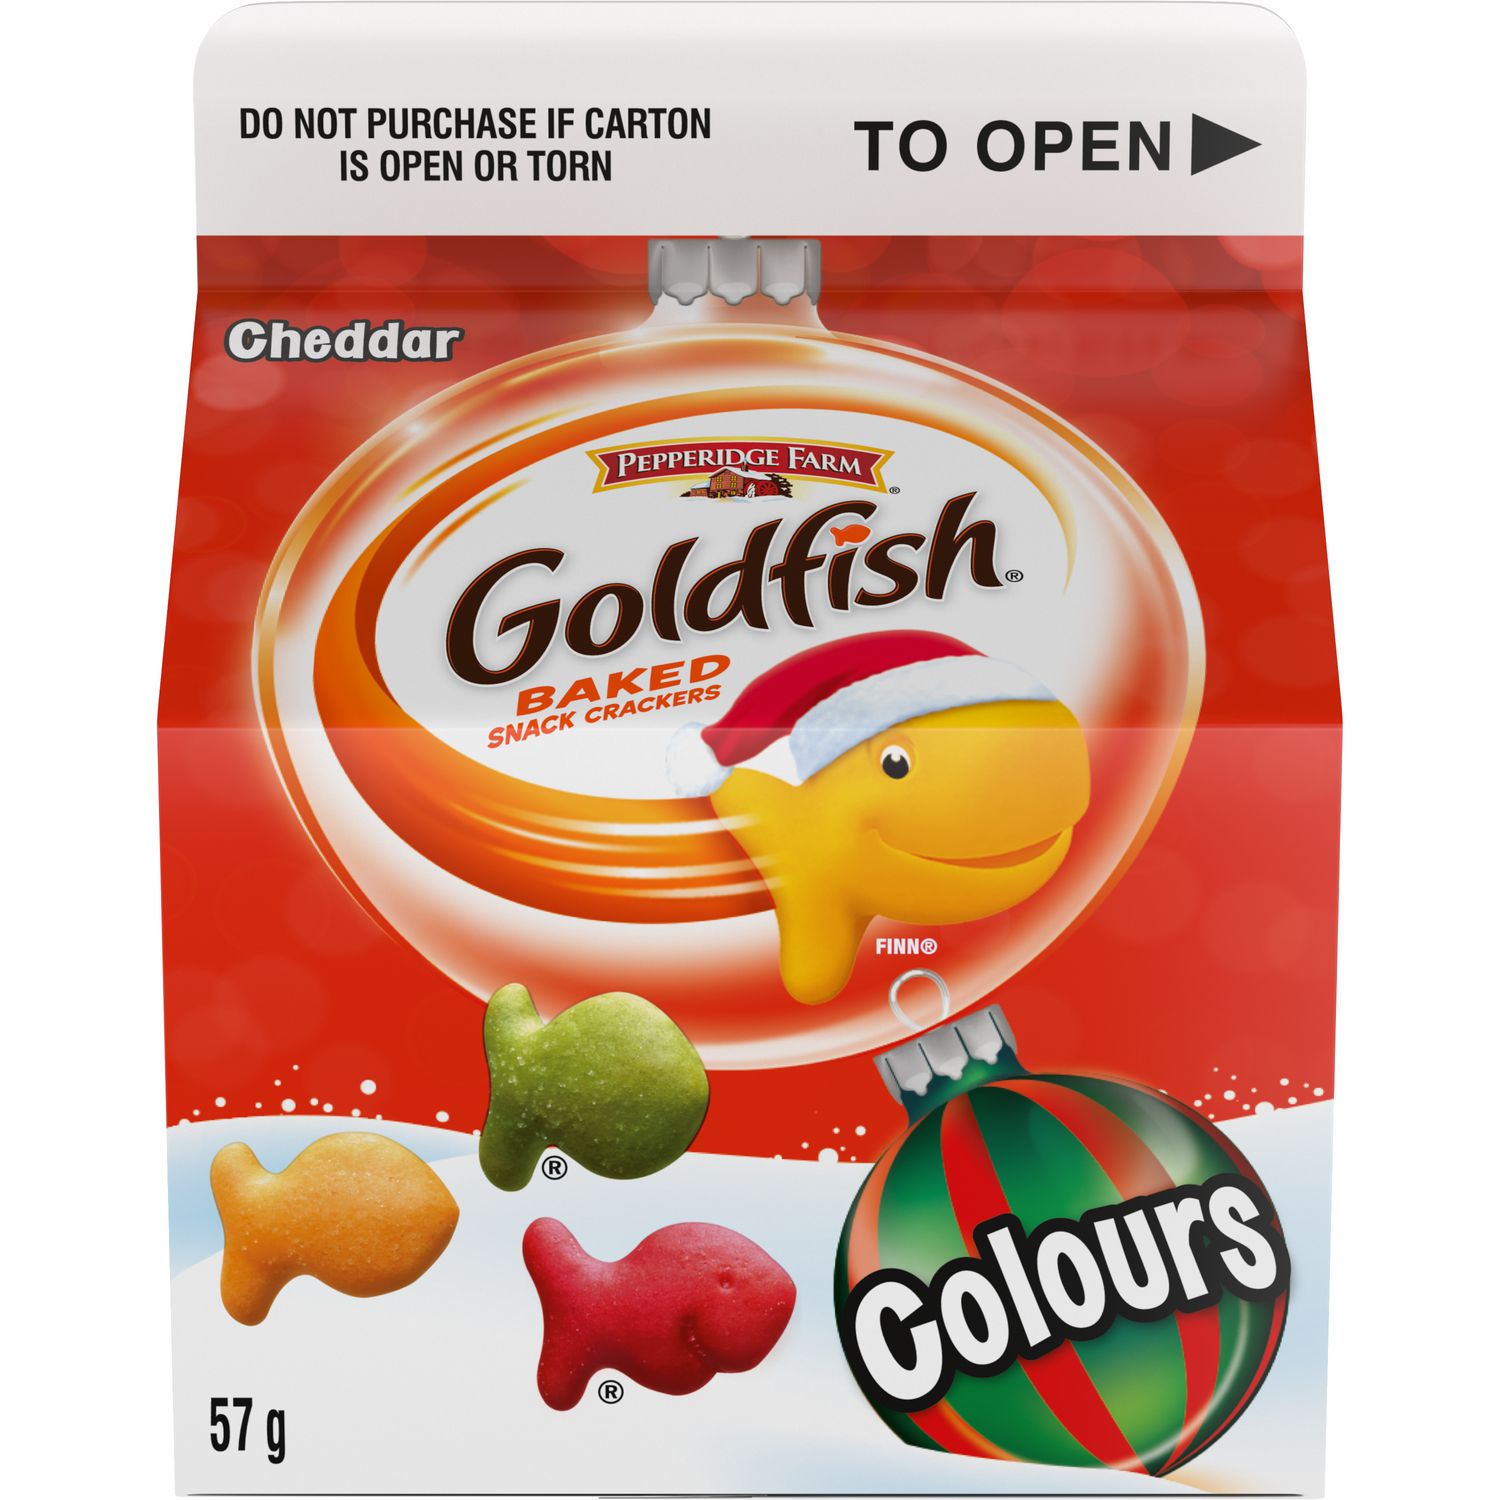 goldfish cheddar halal